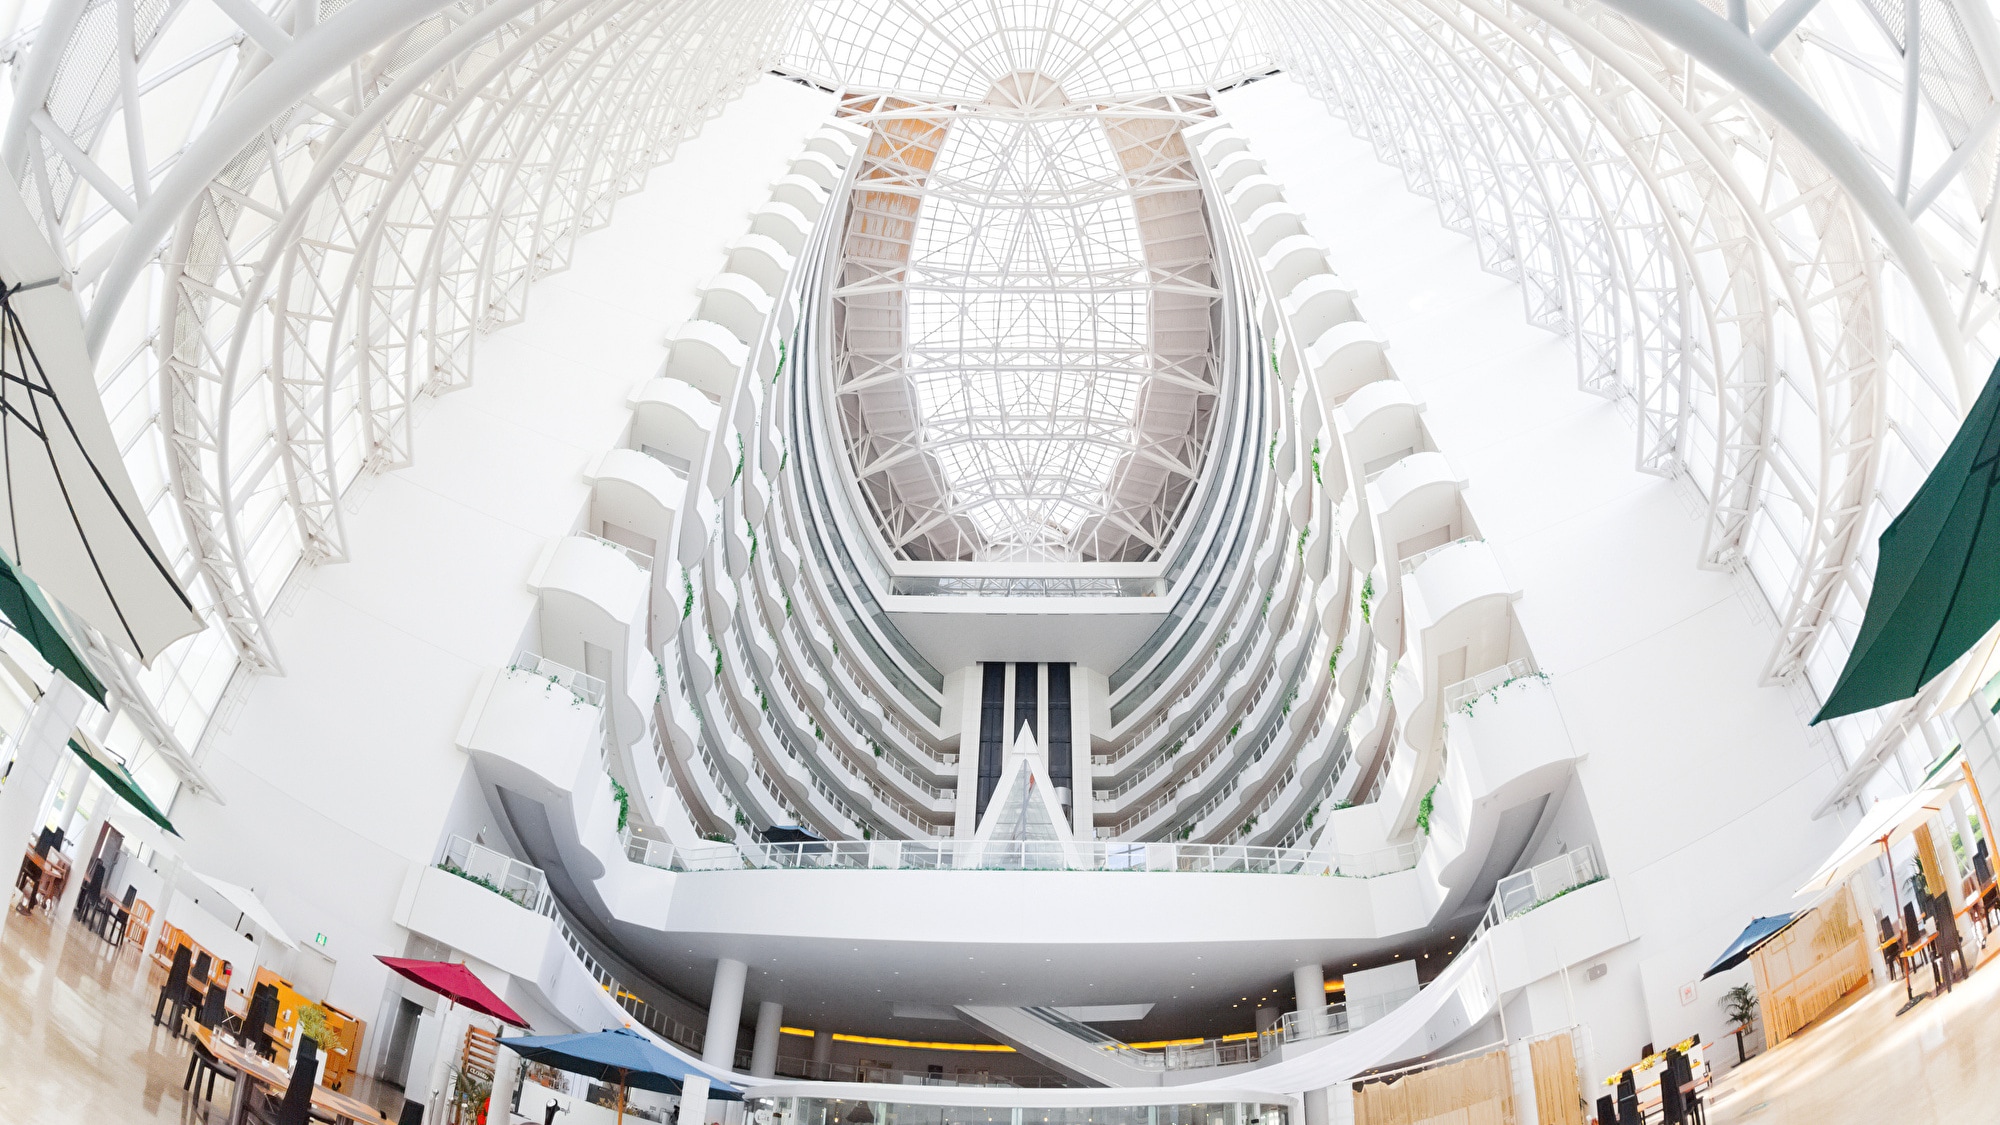 Salah satu ruang atrium terbesar di Jepang, atrium besar 60 meter di atas tanah